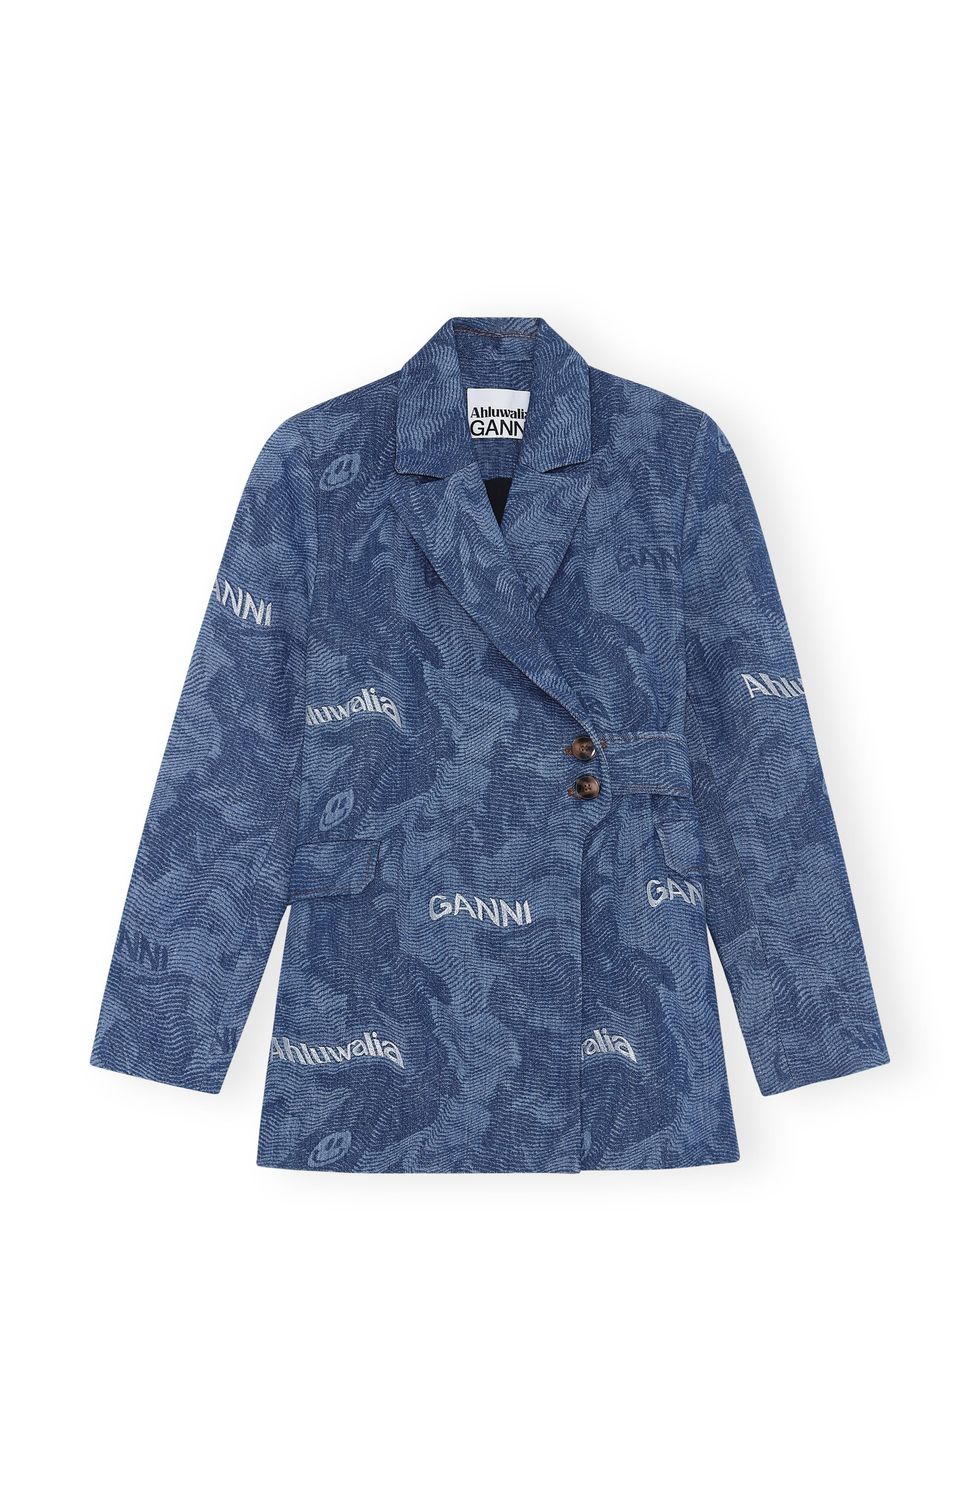 Louis Vuitton x Supreme Jacquard Denim Overalls - Blue, 13 Rise